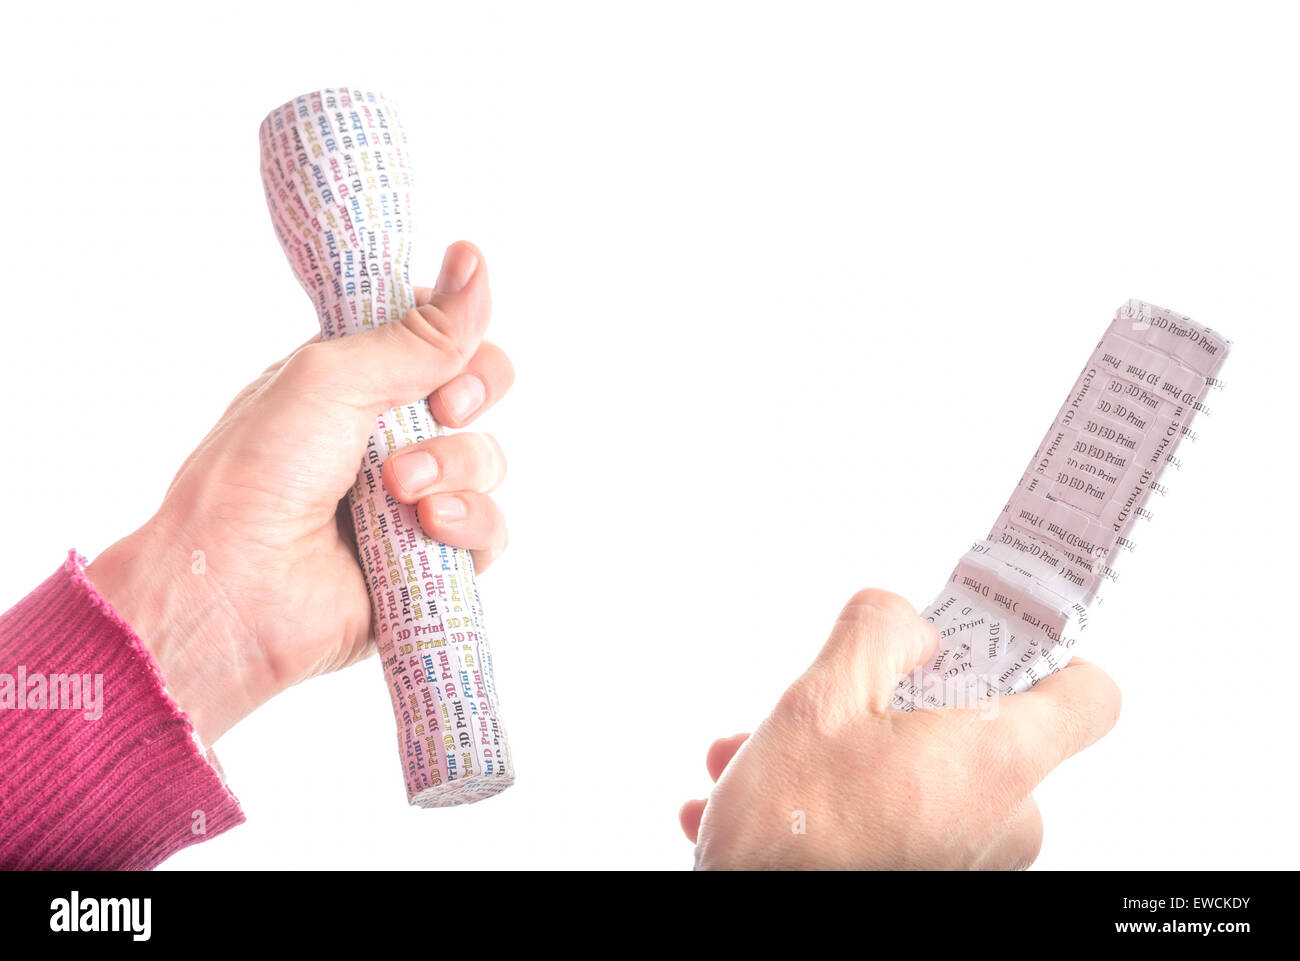 Kaukasische glattschalige Erwachsene Hände im roten Pullover hält 3D-Druck Prototypen des weißen Taschenlampe und Clam Shell Handy gekennzeichnet Stockfoto